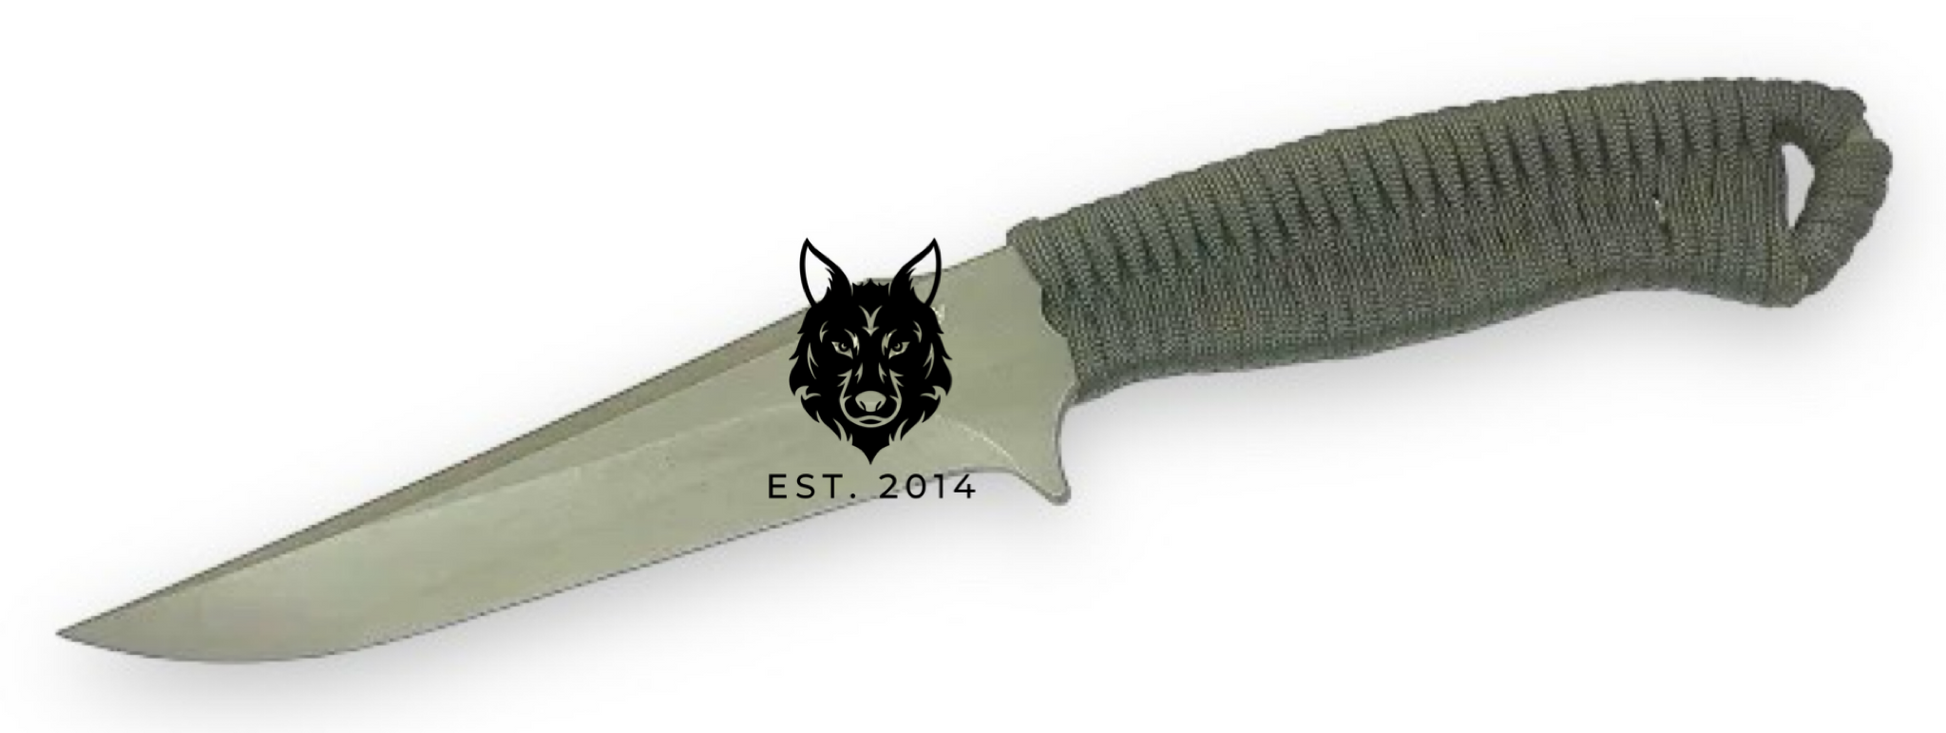 Black Braided Tactical Knife & Sheath